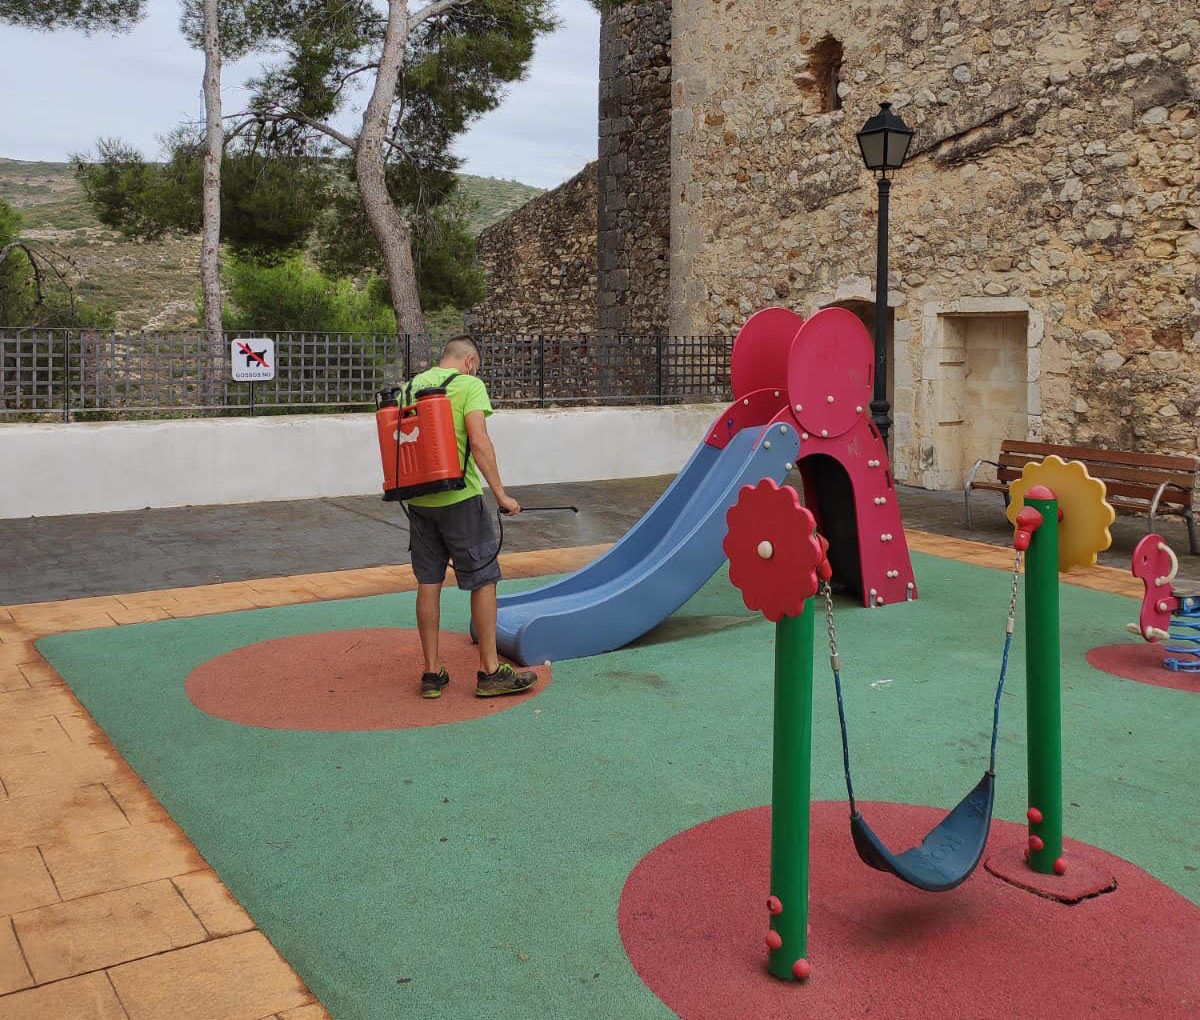 Les Coves de Vinromà reforça el servei de neteja i desinfecció als parcs infantils i la zona esportiva